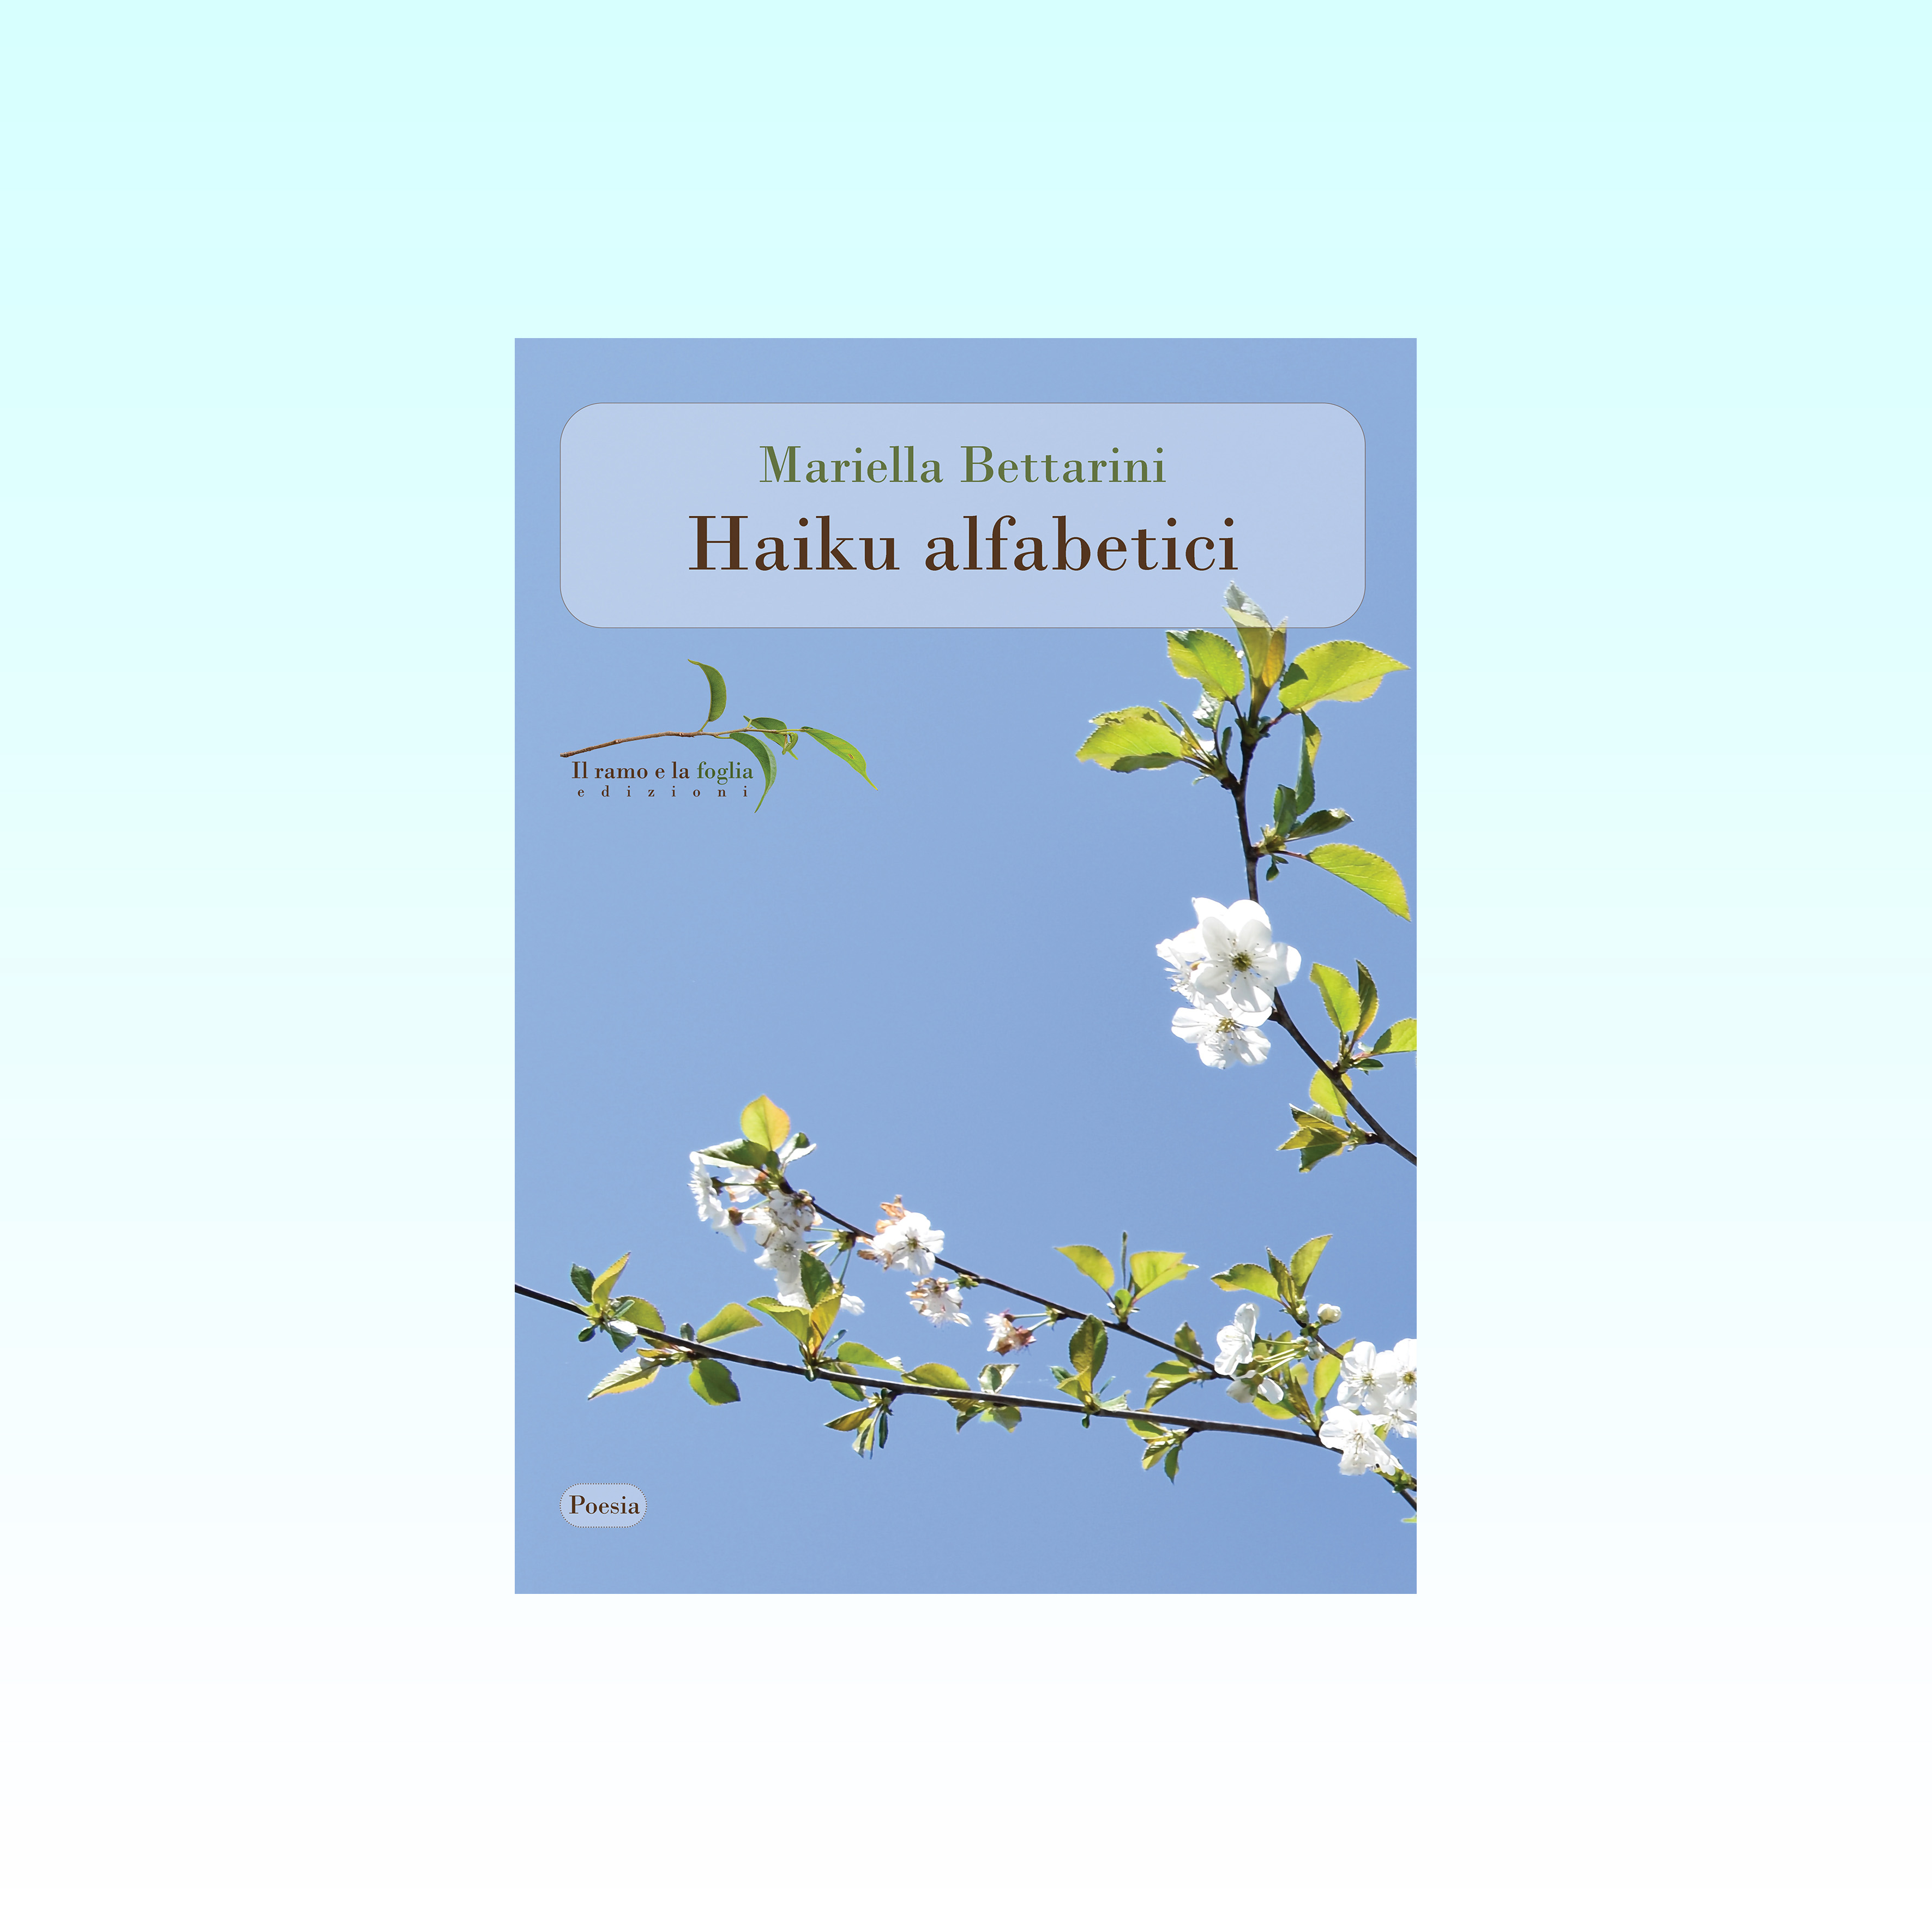 La copertina di “Haiku alfabetici”